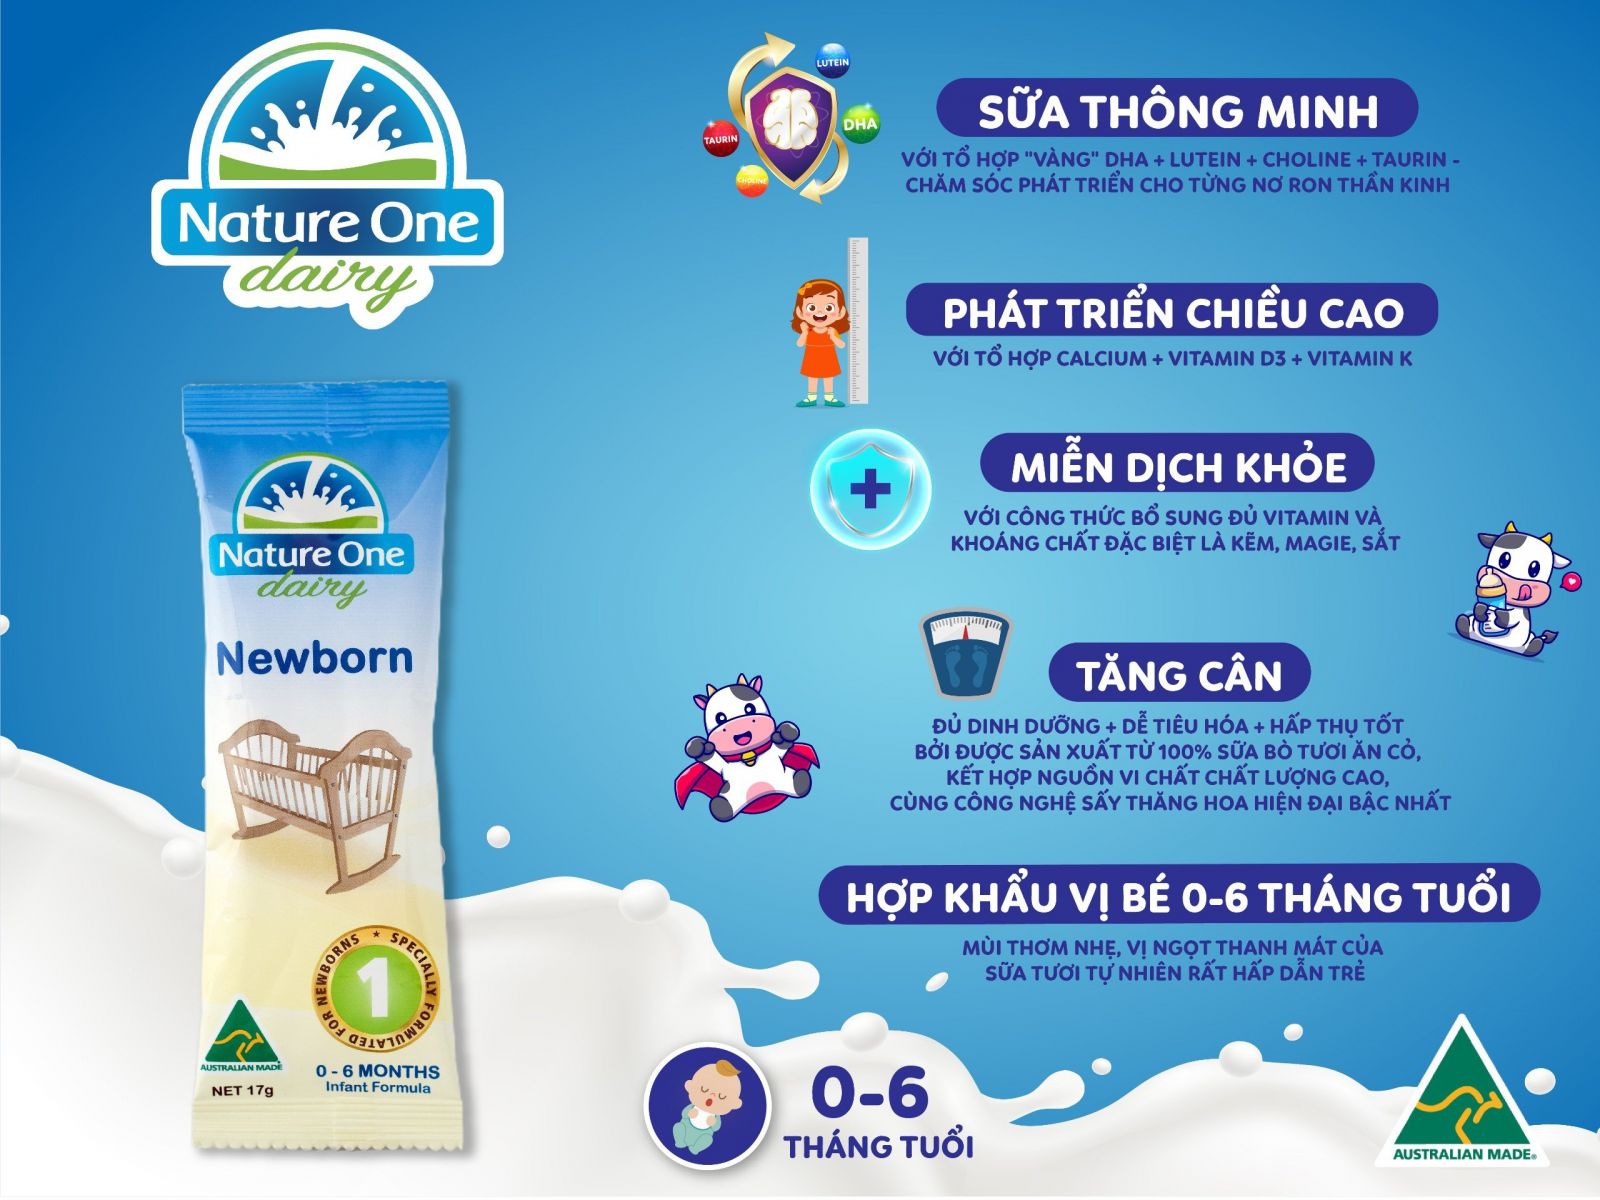 Nature One Dairy Newborn Infant Formula Step 1 - Sữa công thức cho bé từ 0 - 6 tháng tuổi (Gói 17g)